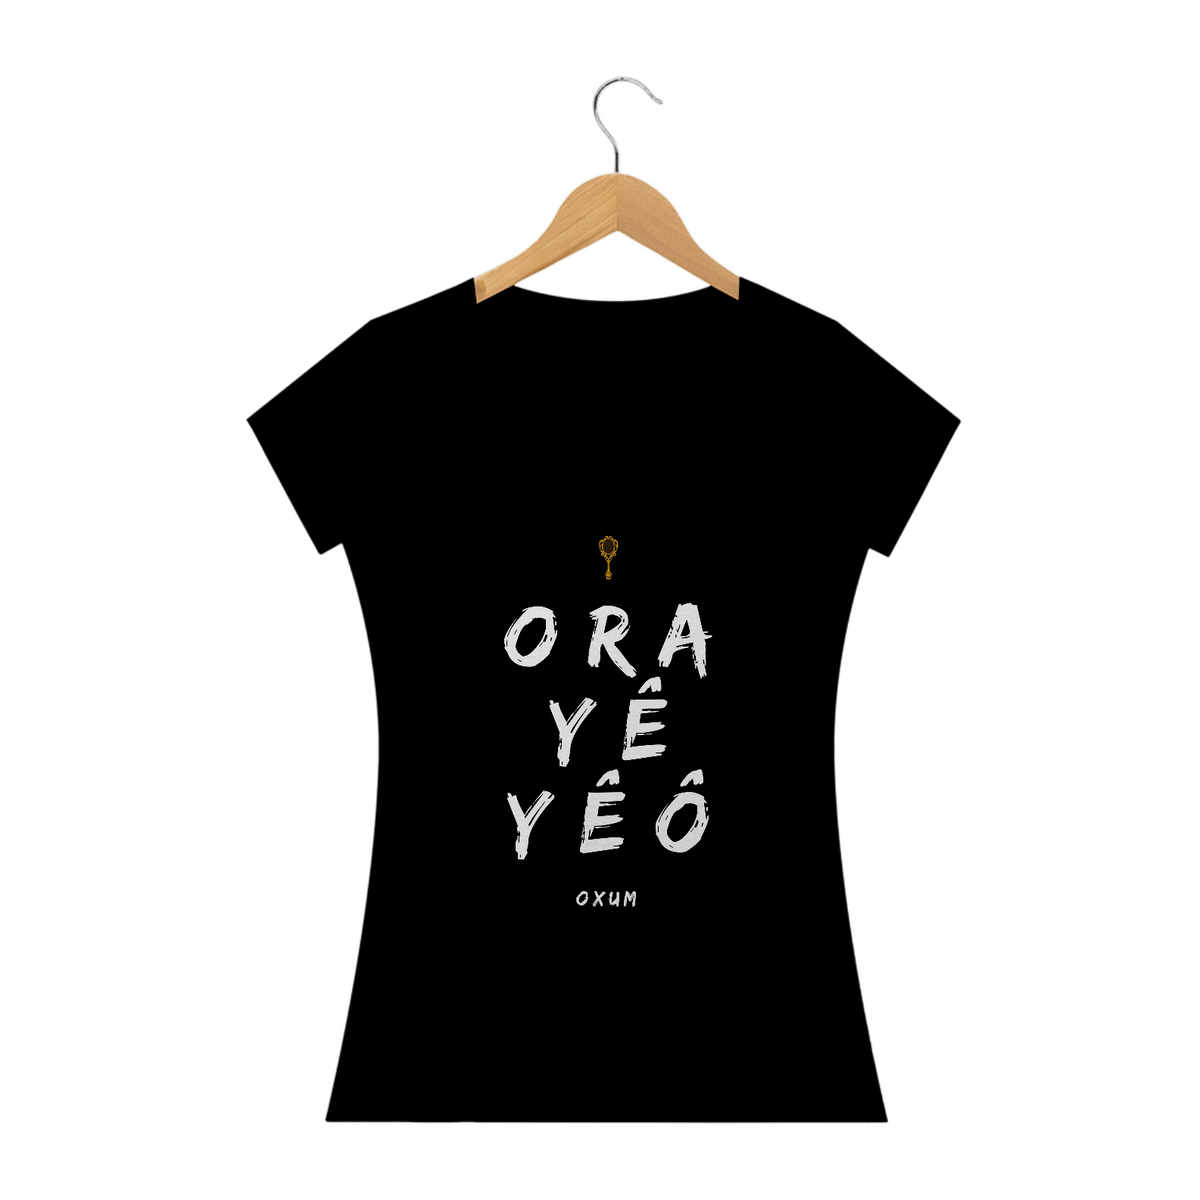 Nome do produto: Camiseta Feminina Osun Oxum - Saudação Òóré Yéyé Osun Preta